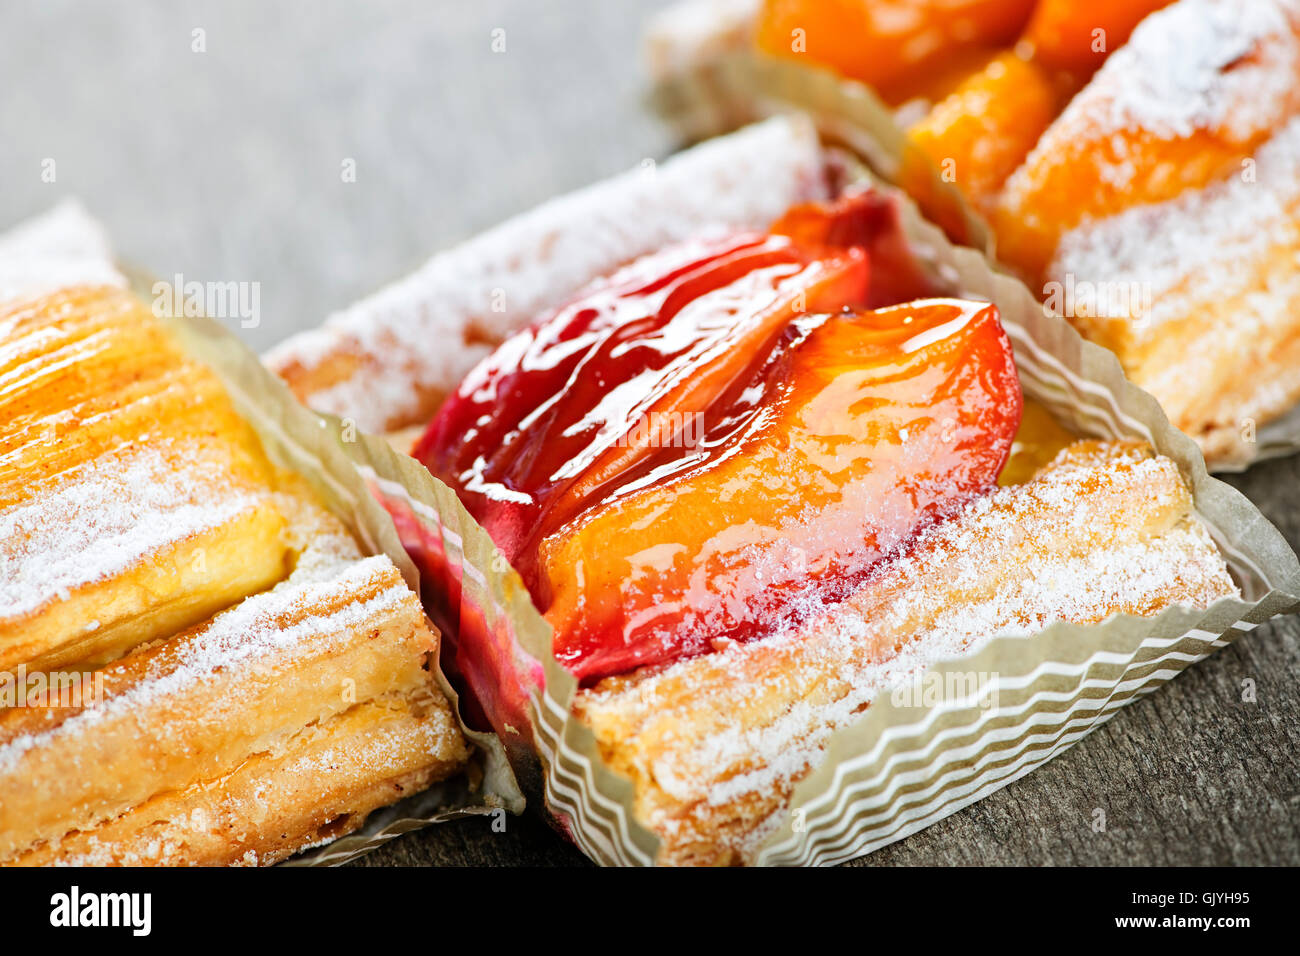 fruit pastries bread Stock Photo